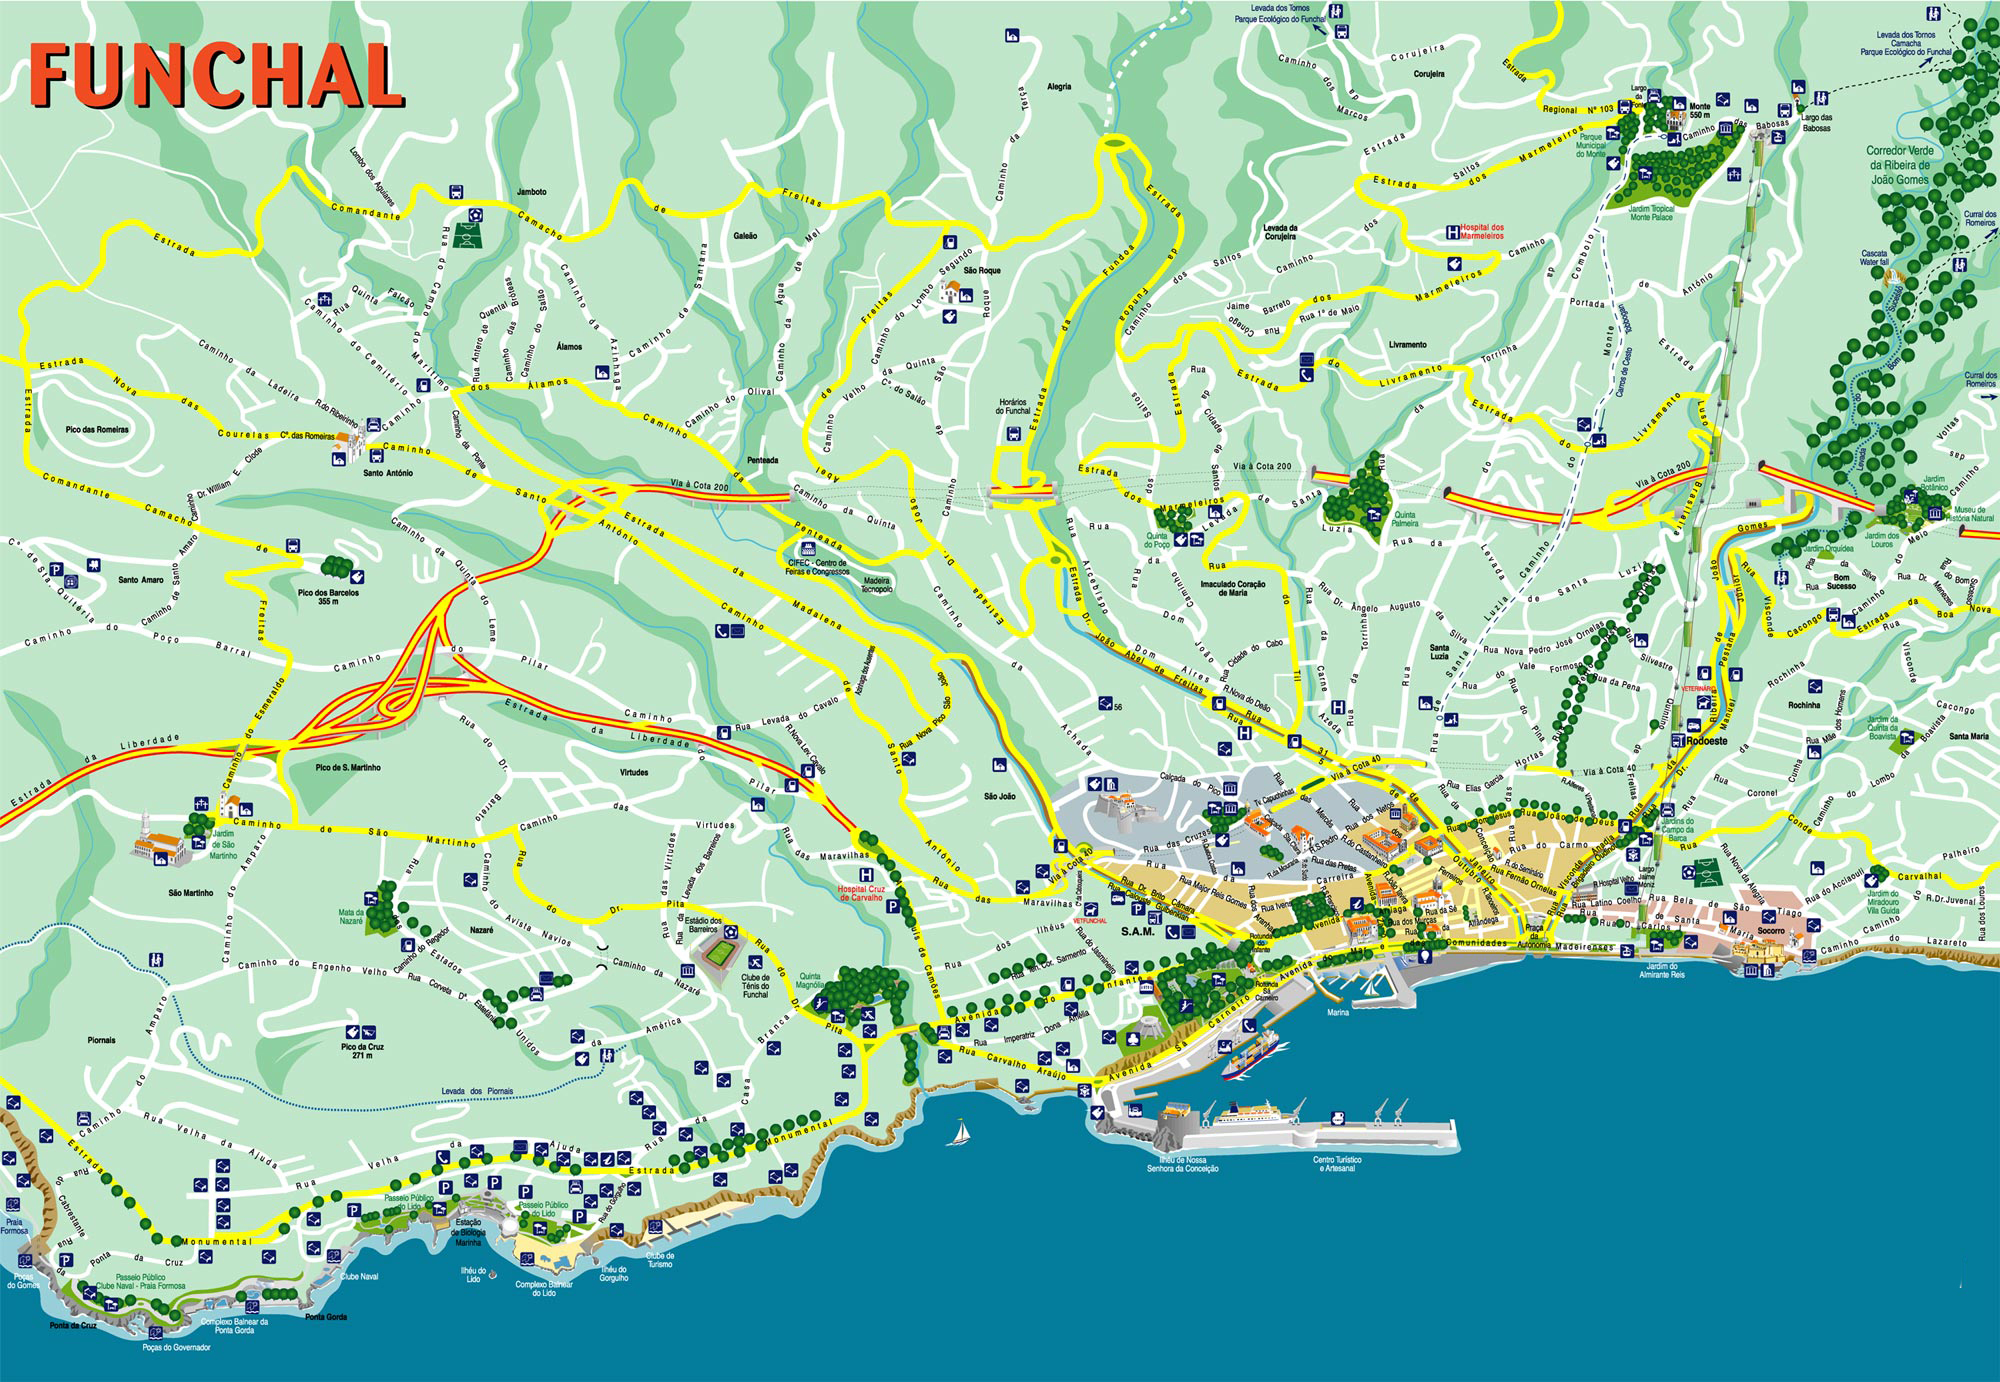 Подробная карта Фуншала | Detailed map of Funchal